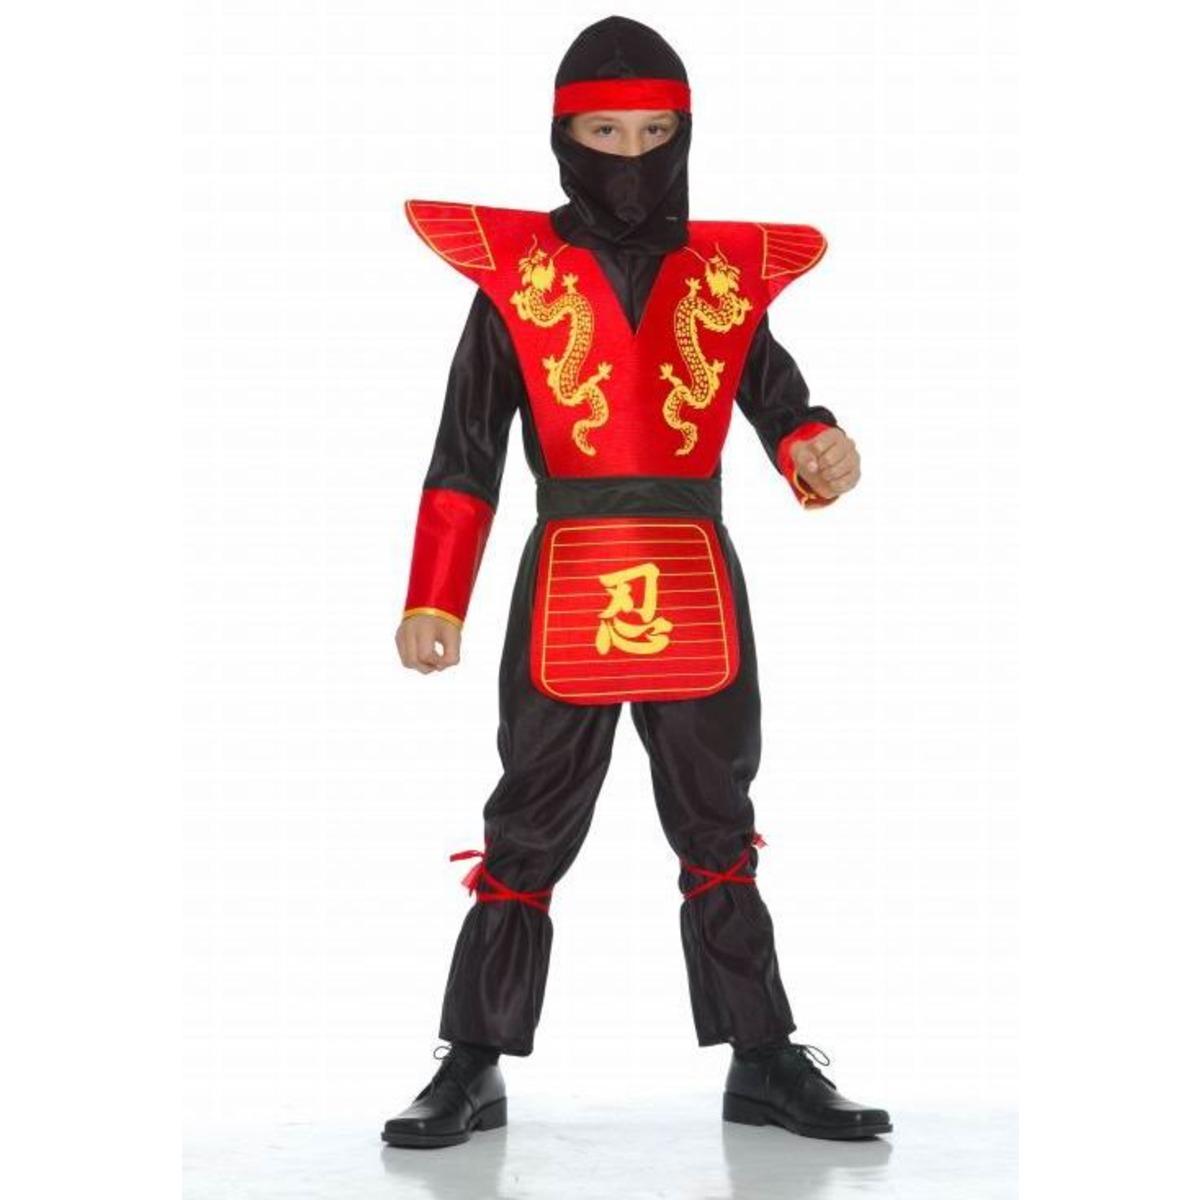 Déguisement ninja samouraï enfant 7 à 9 ans - taille m - Noir, Rouge, Jaune